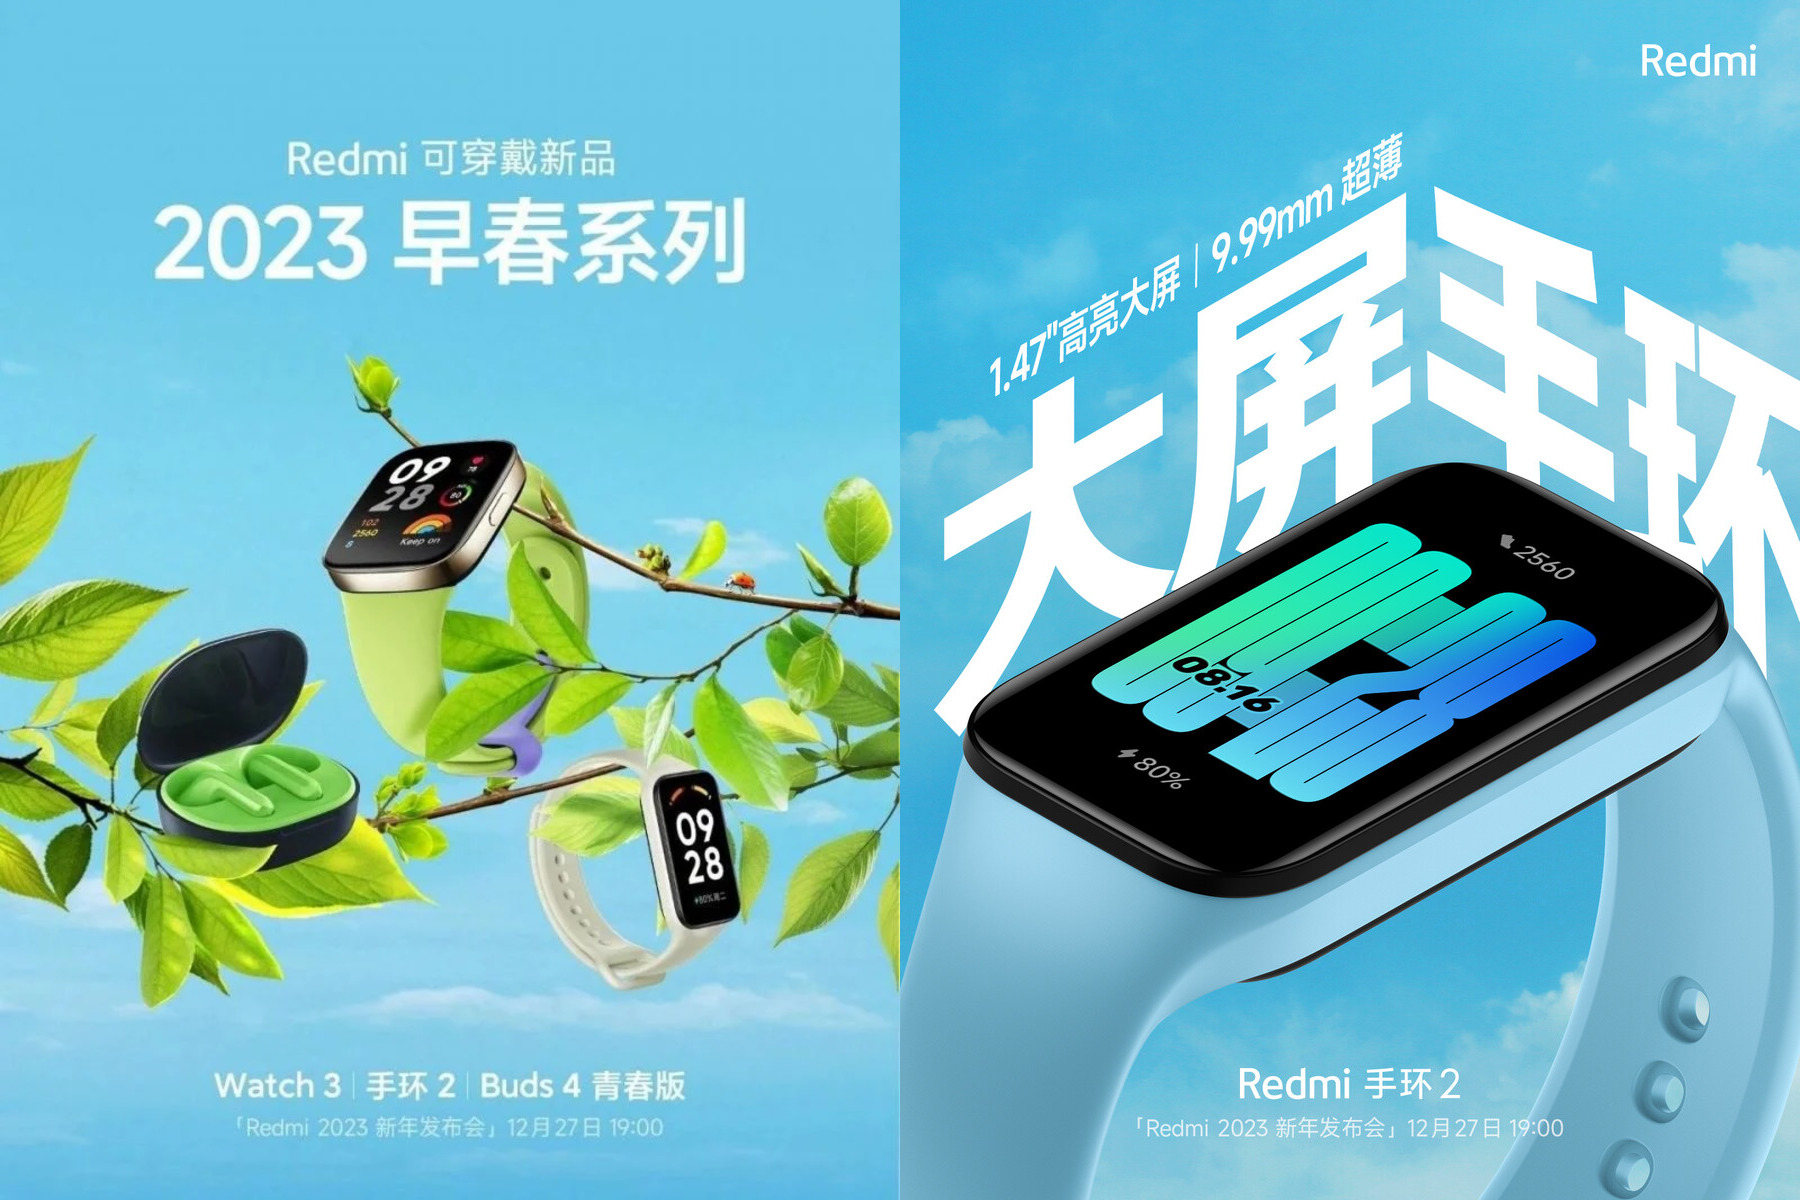 1,47-calowy wyświetlacz AMOLED i korpus o grubości 9,99 mm: Xiaomi teasuje Redmi Band 2 fitness tracker przed premierą